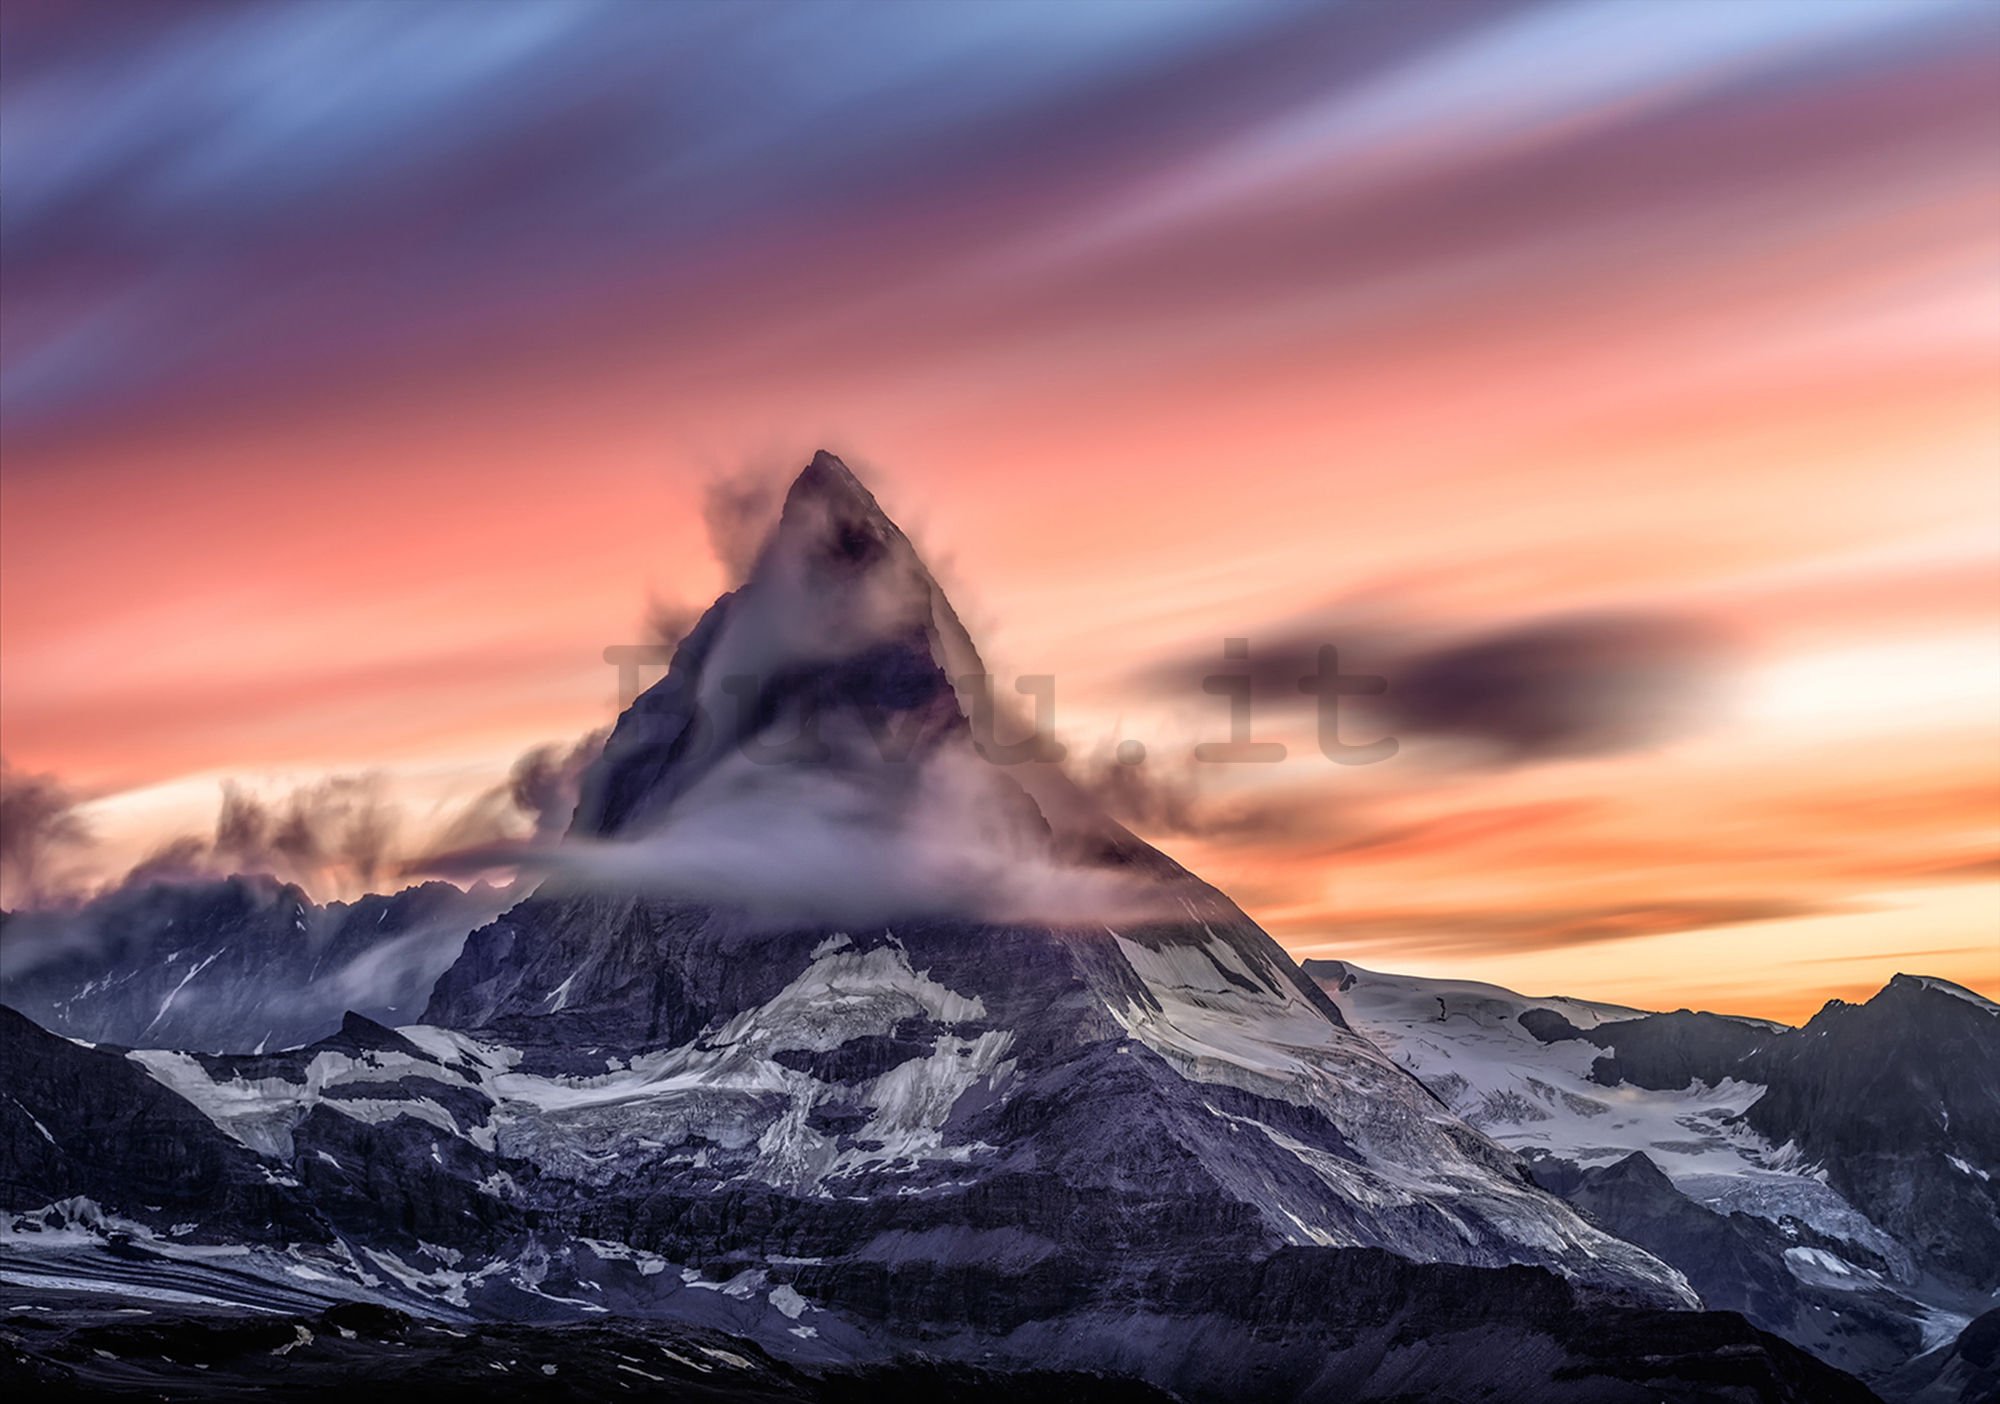 Fotomurale in TNT: Matterhorn (1) - 184x254 cm